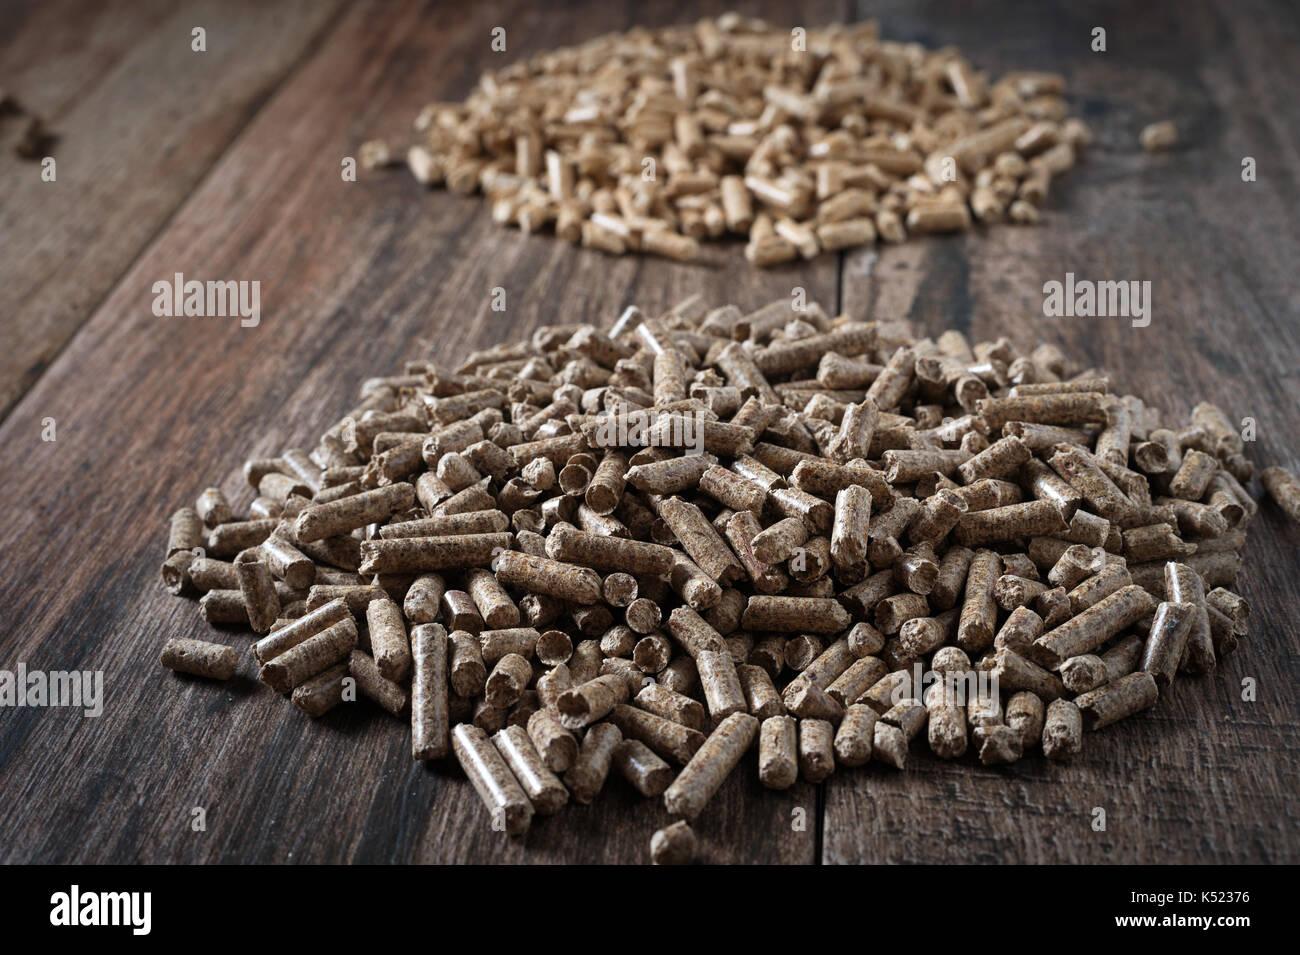 Calorific value of different biomass pellets